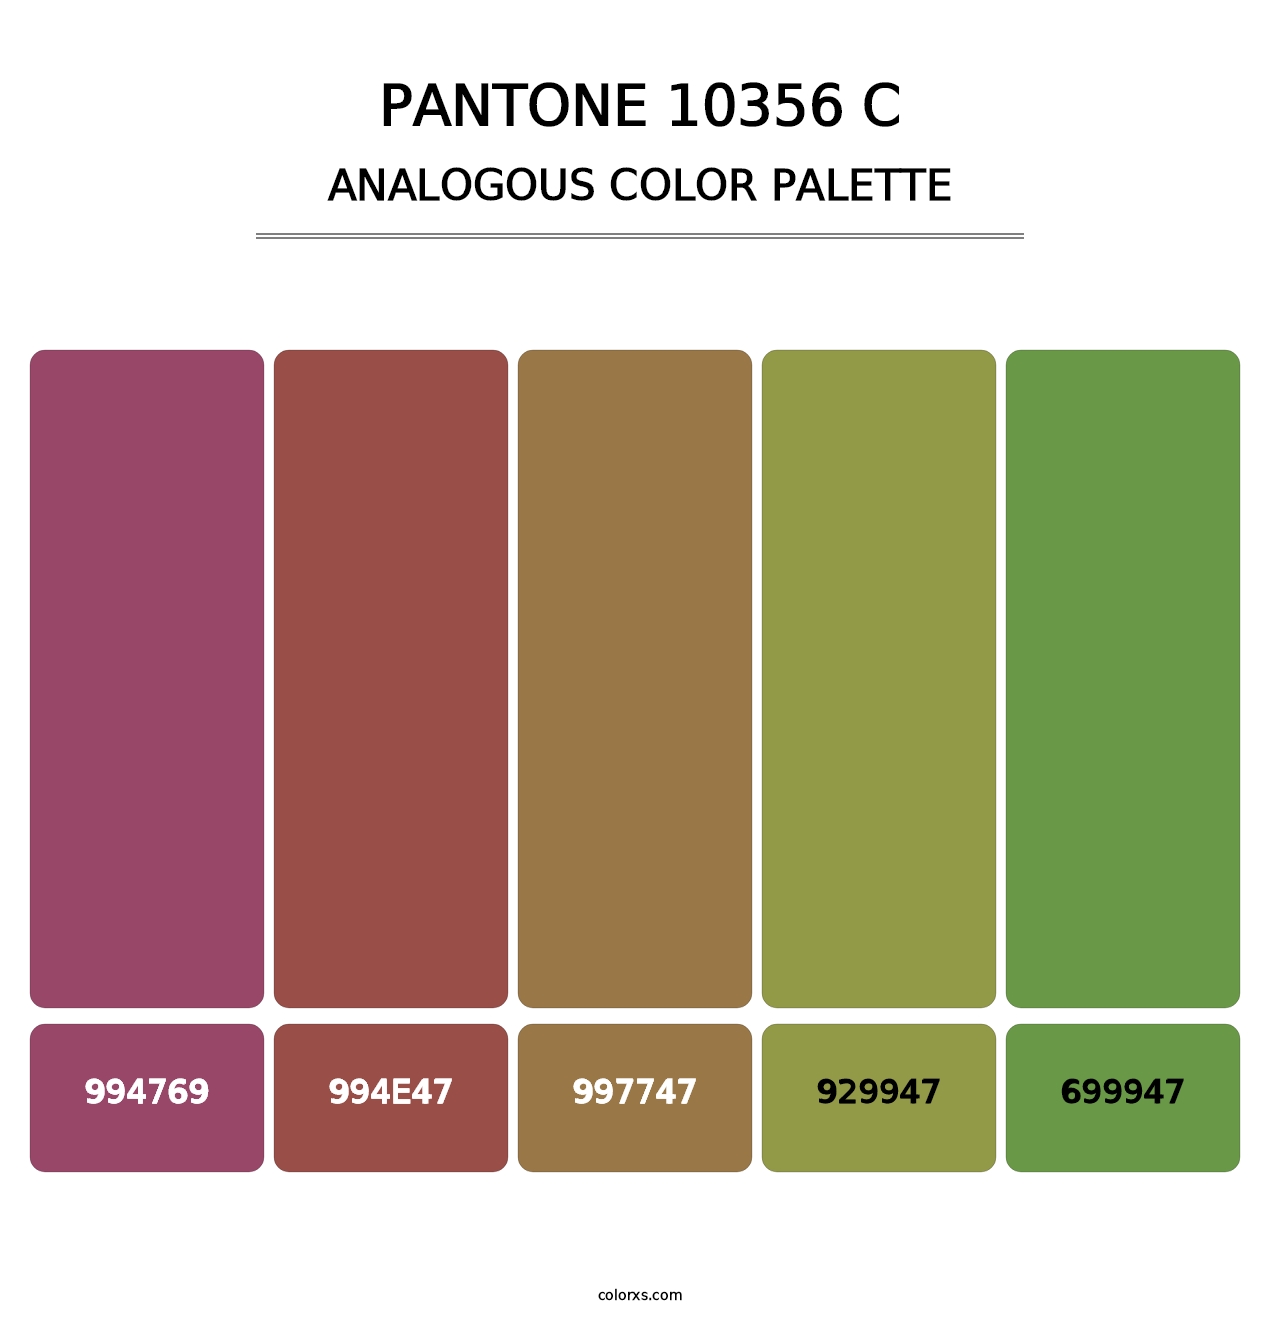 PANTONE 10356 C - Analogous Color Palette